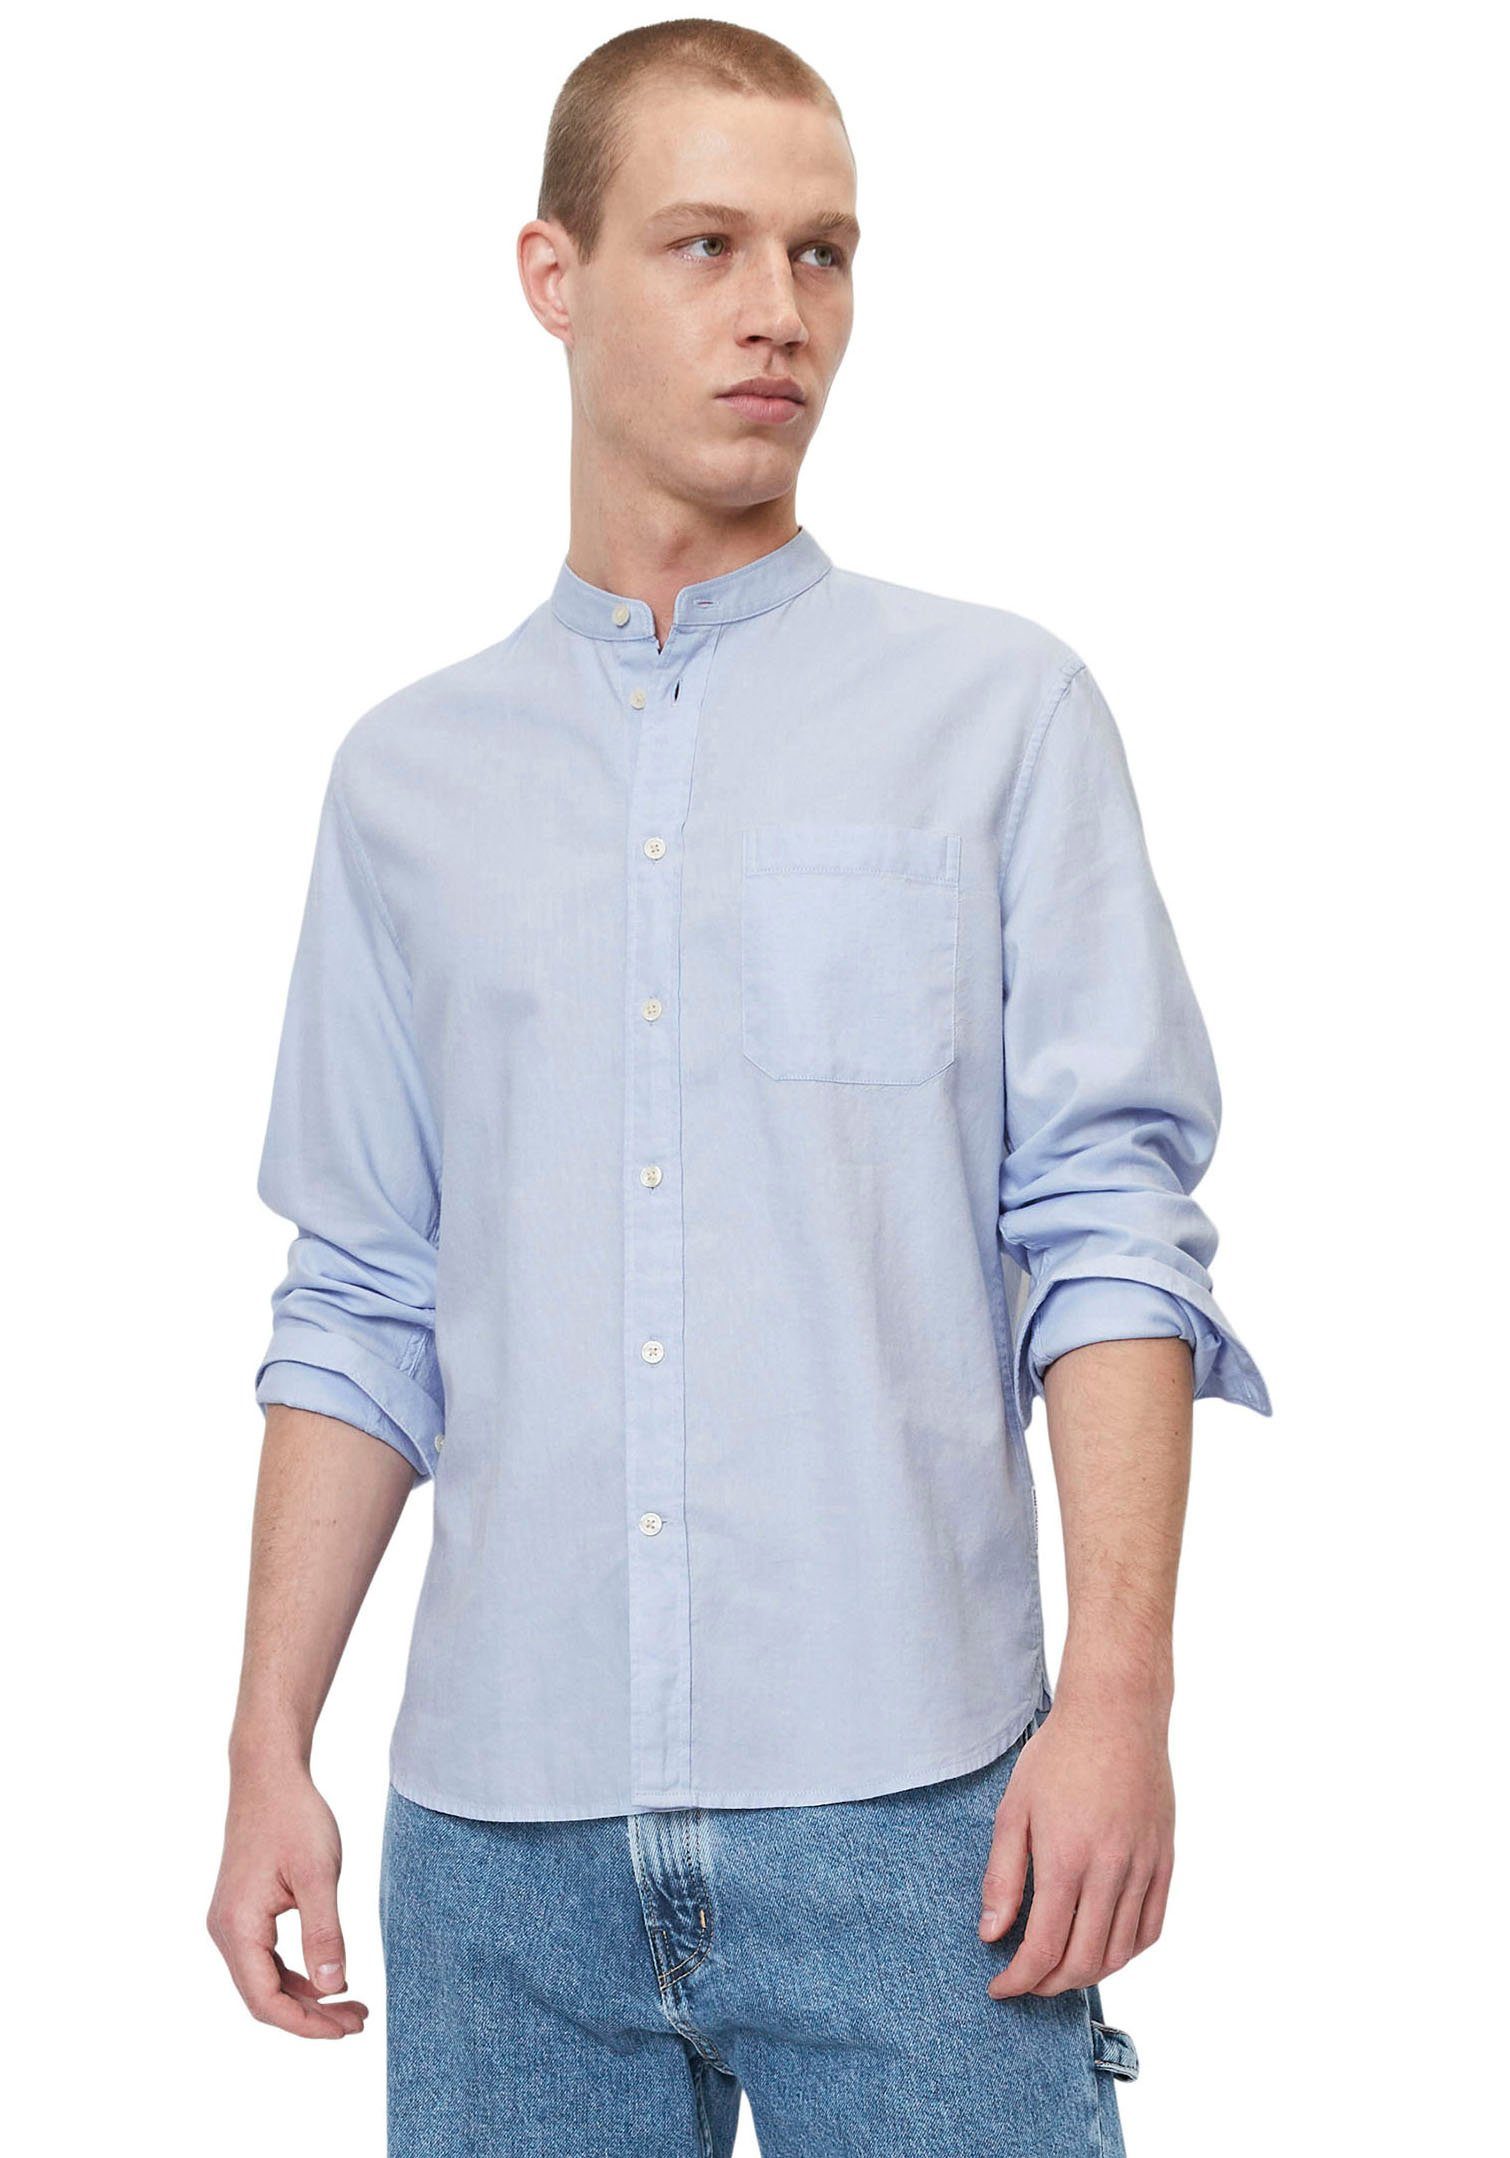 Marc O'Polo DENIM Langarmhemd mit Stehkragen hellblau | Hemden